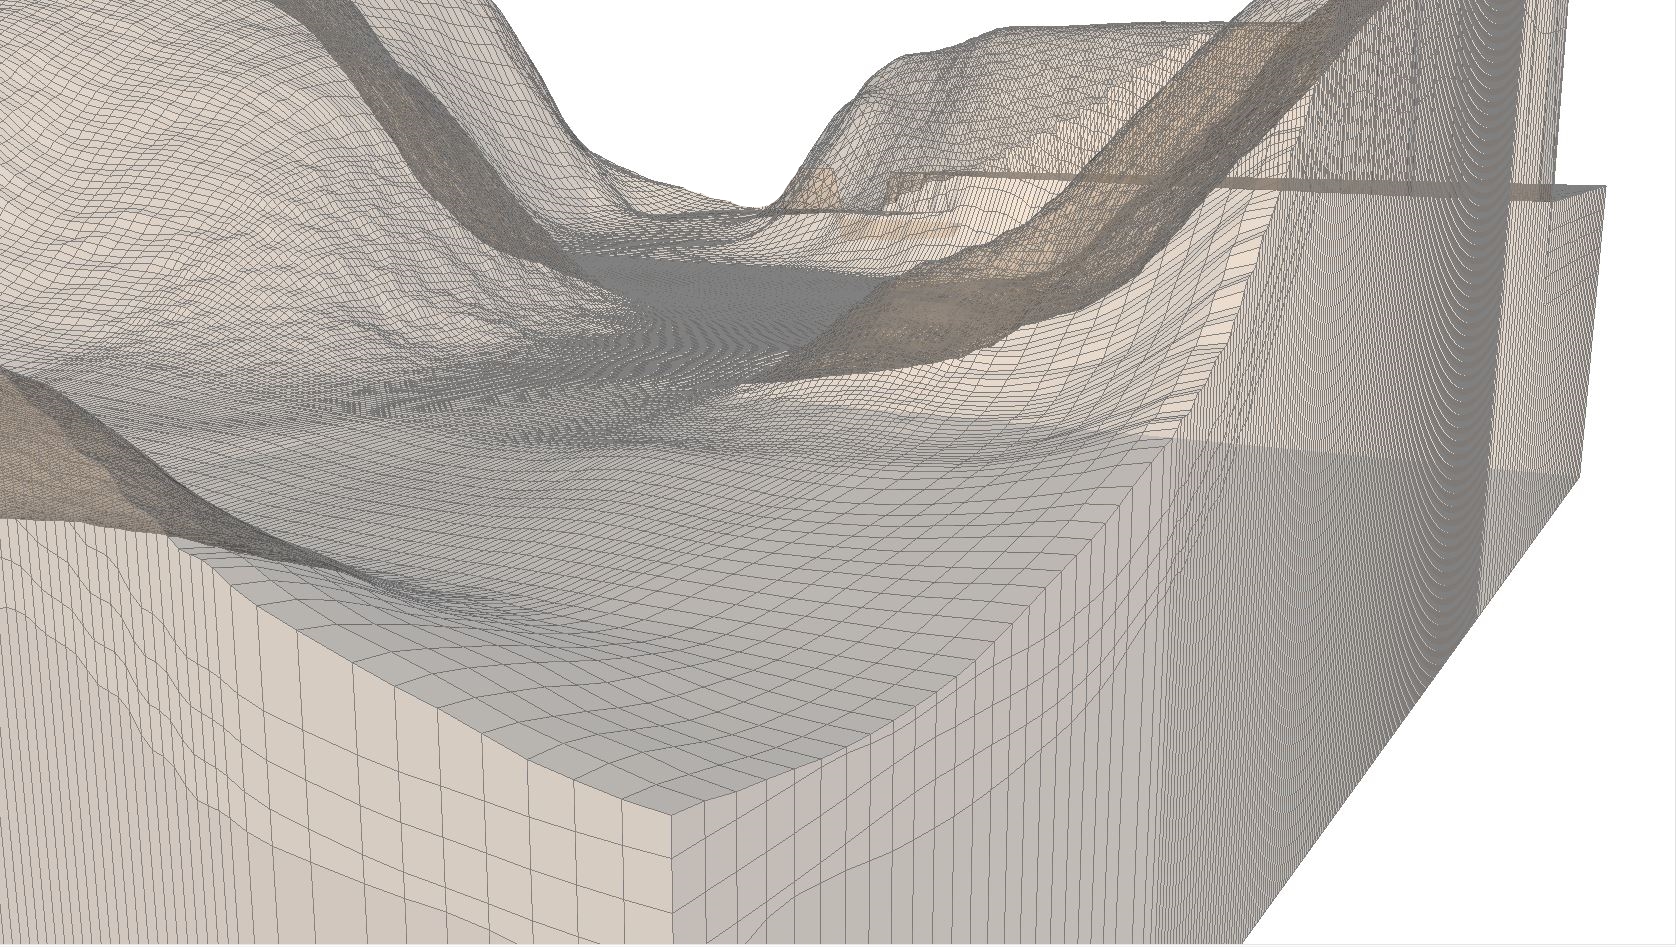 tethys -modellazione matematica - sito di un acquifero in roccia per la progettazione dei sistemi di messa in sicurezza e bonifica